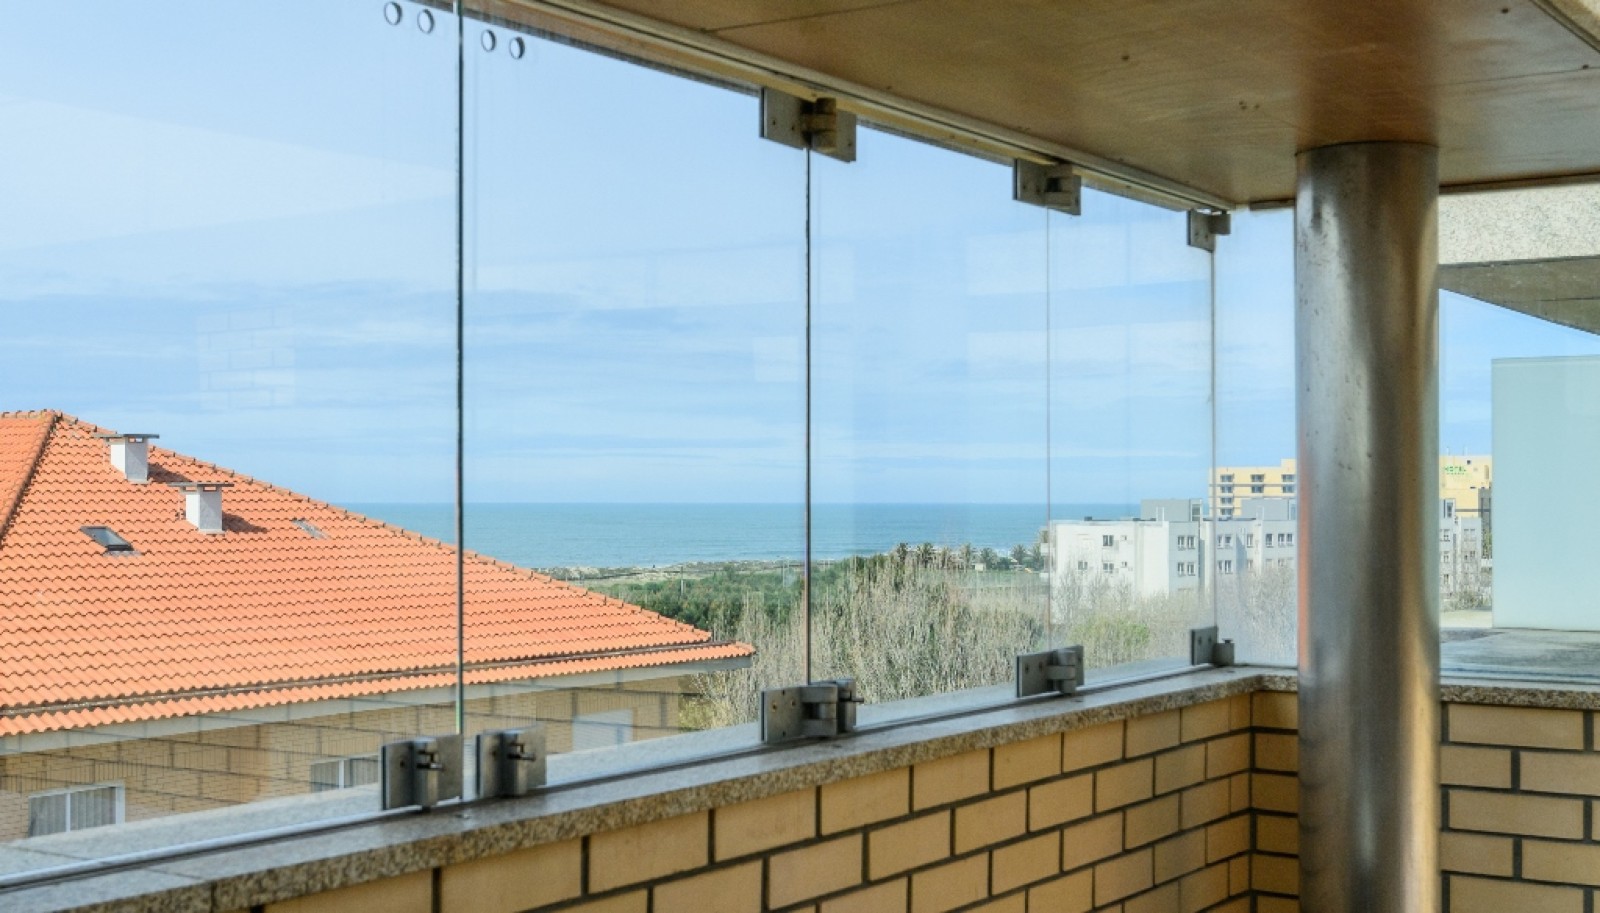 Apartamento T4 Duplex com vista de mar, à venda, em Gaia_256653